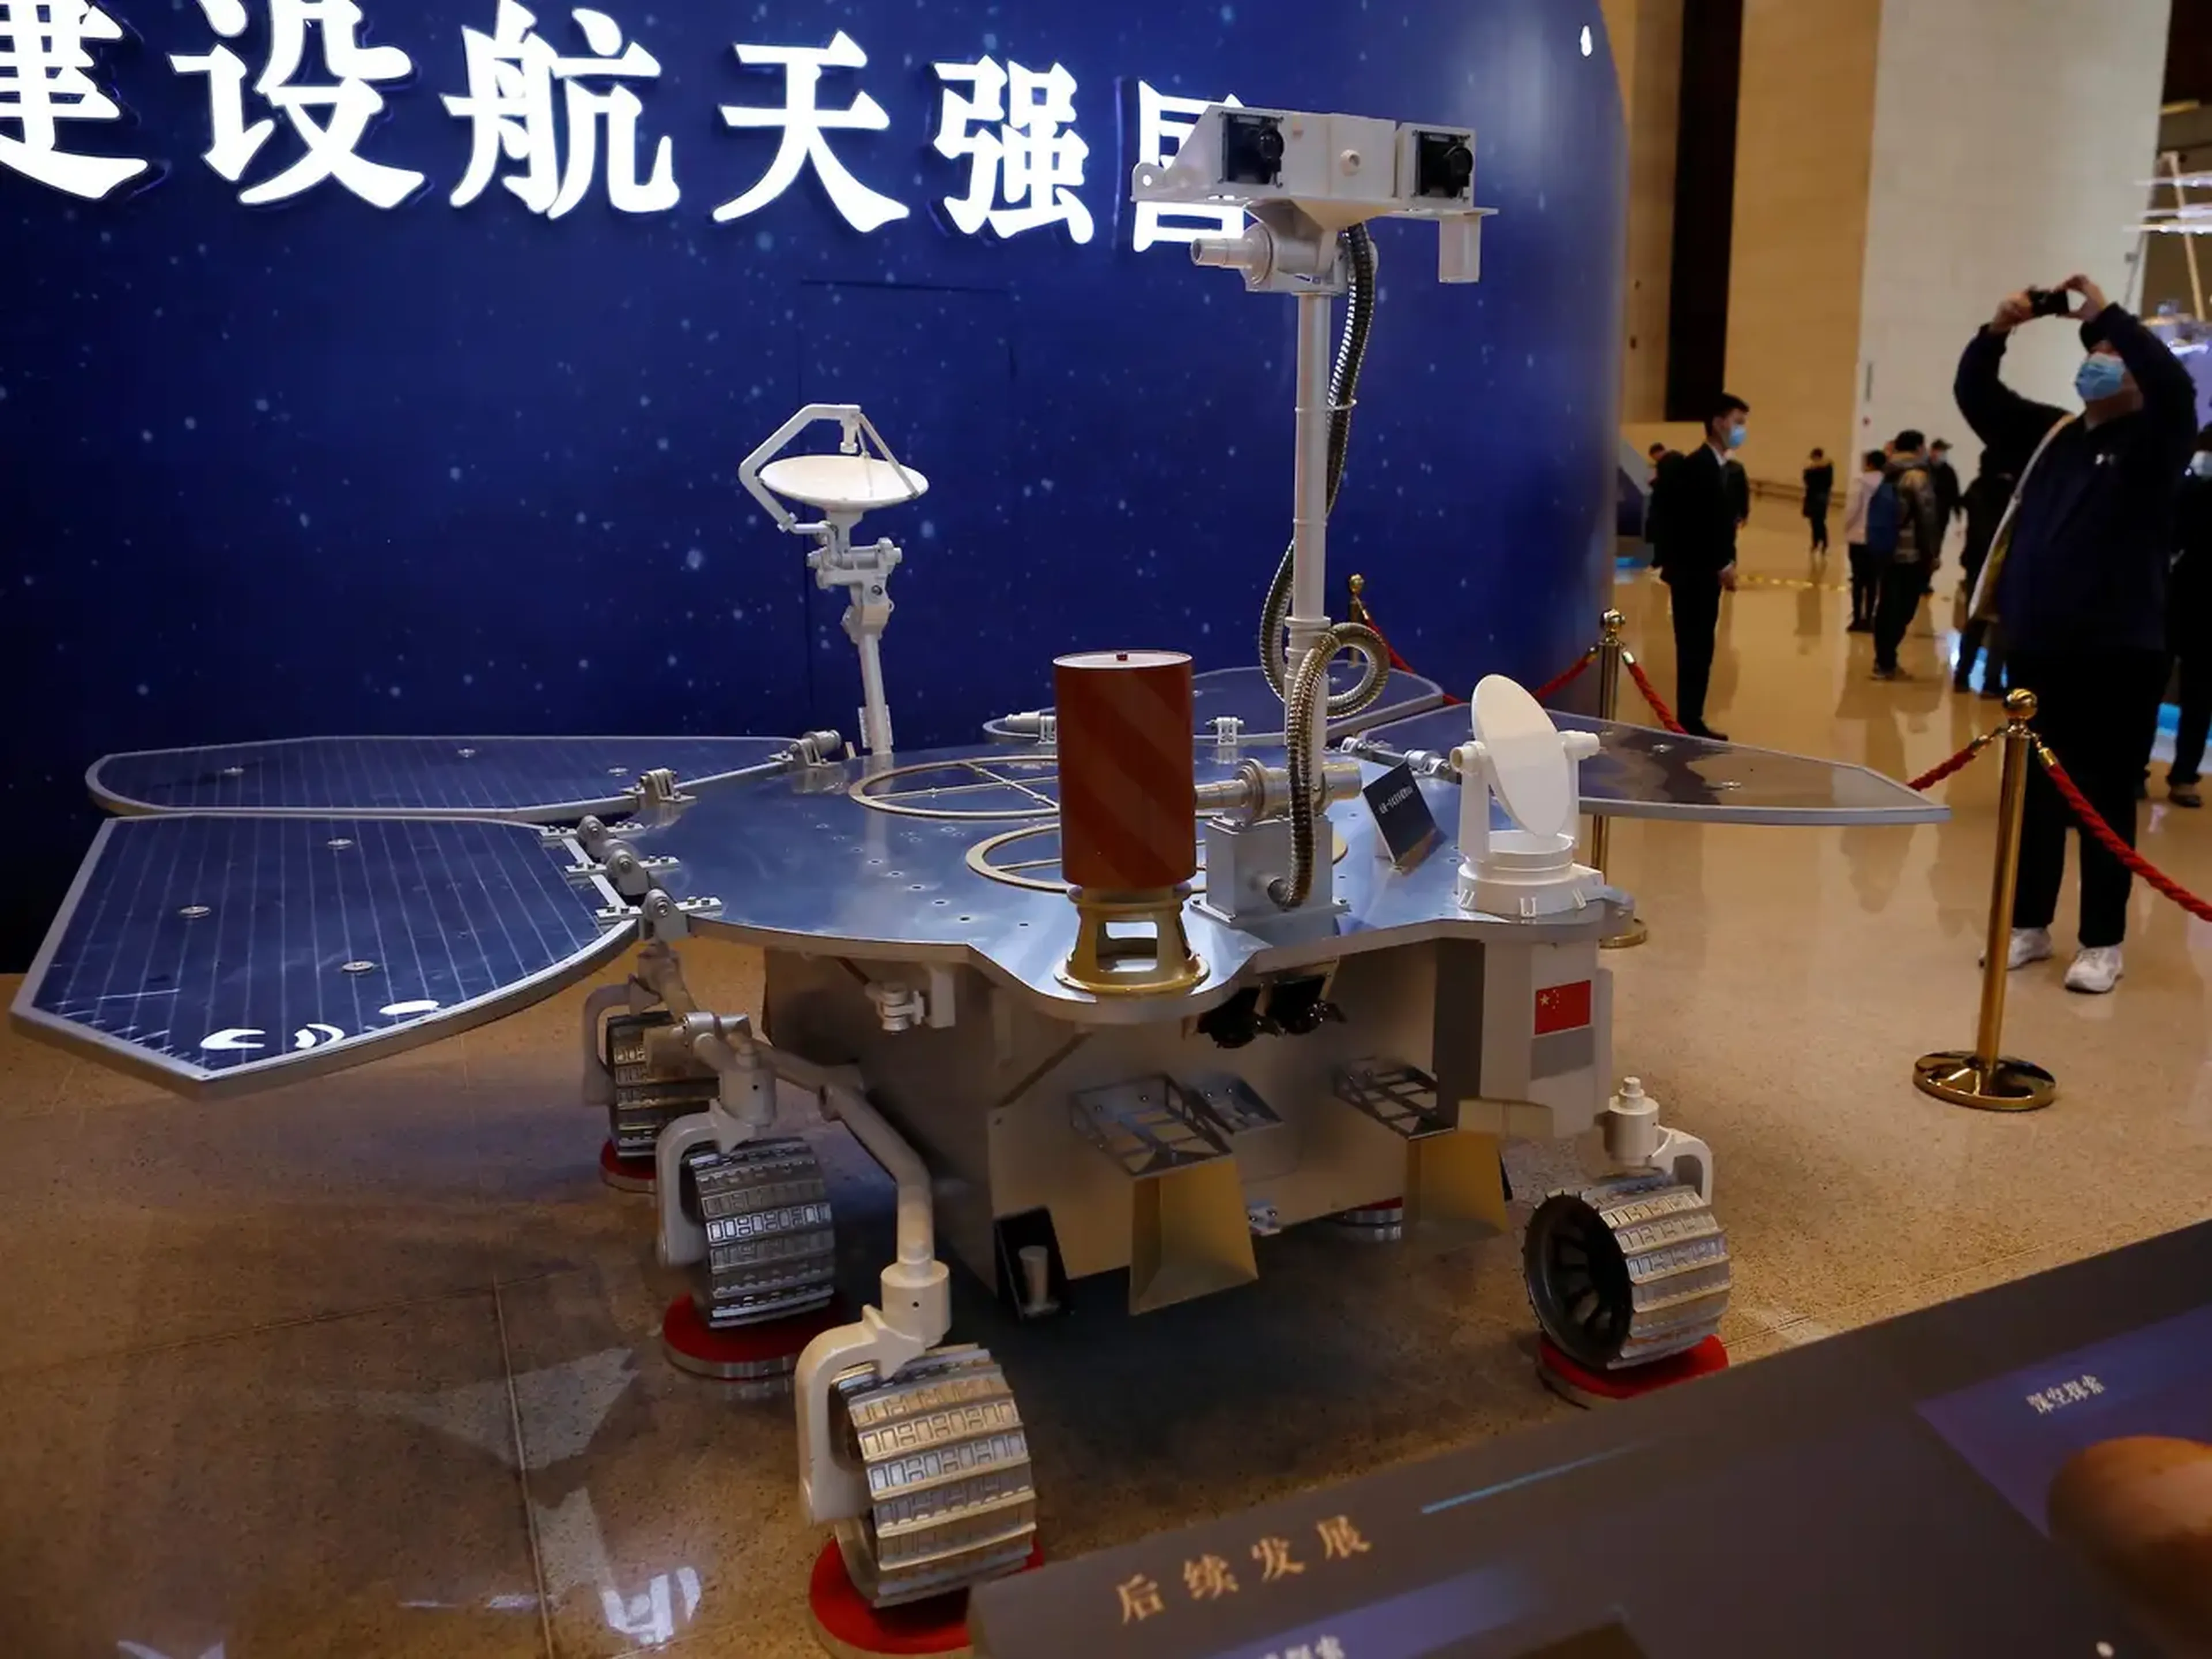 Una réplica del explorador de Marte Tianwen-1 en una exposición en el Museo Nacional de Pekín, China, el 3 de marzo de 2021.